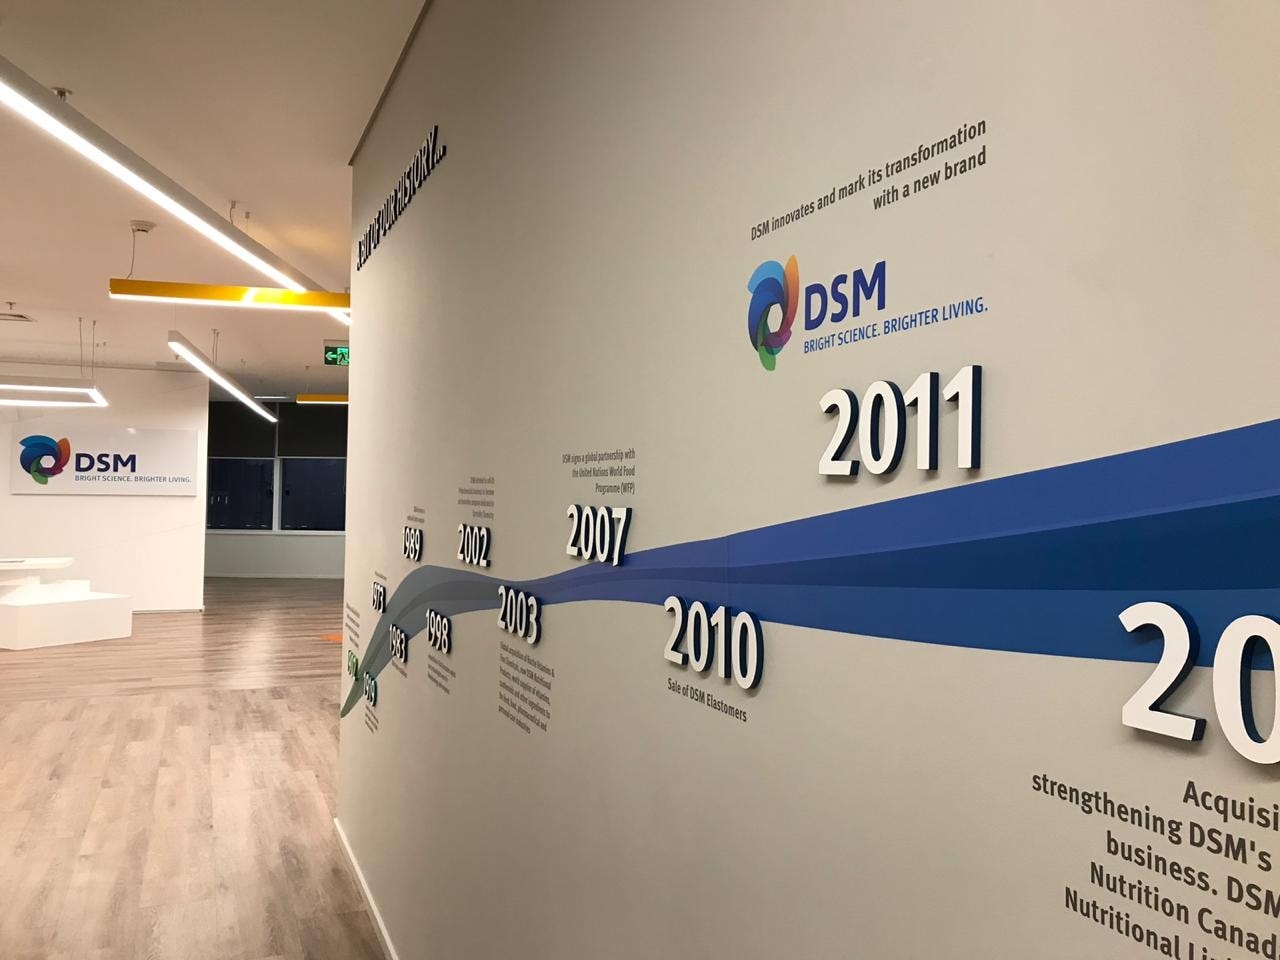 Foto de uma parede branca com o logo da D S M e uma linha do tempo que representa momentos importantes da história da D S M.